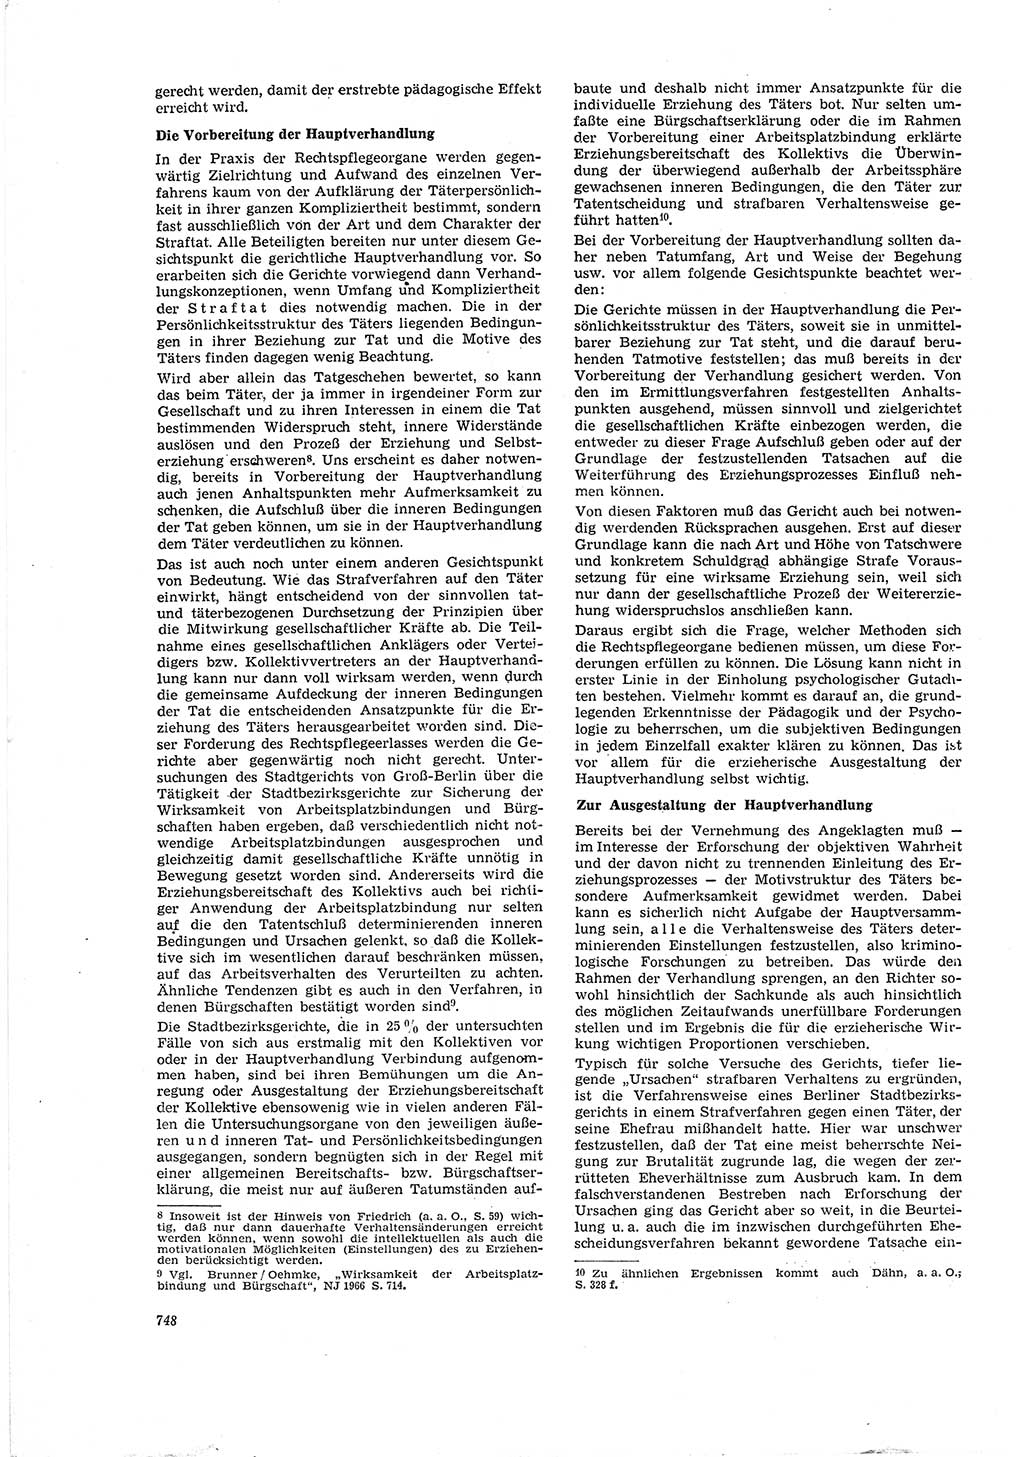 Neue Justiz (NJ), Zeitschrift für Recht und Rechtswissenschaft [Deutsche Demokratische Republik (DDR)], 20. Jahrgang 1966, Seite 748 (NJ DDR 1966, S. 748)